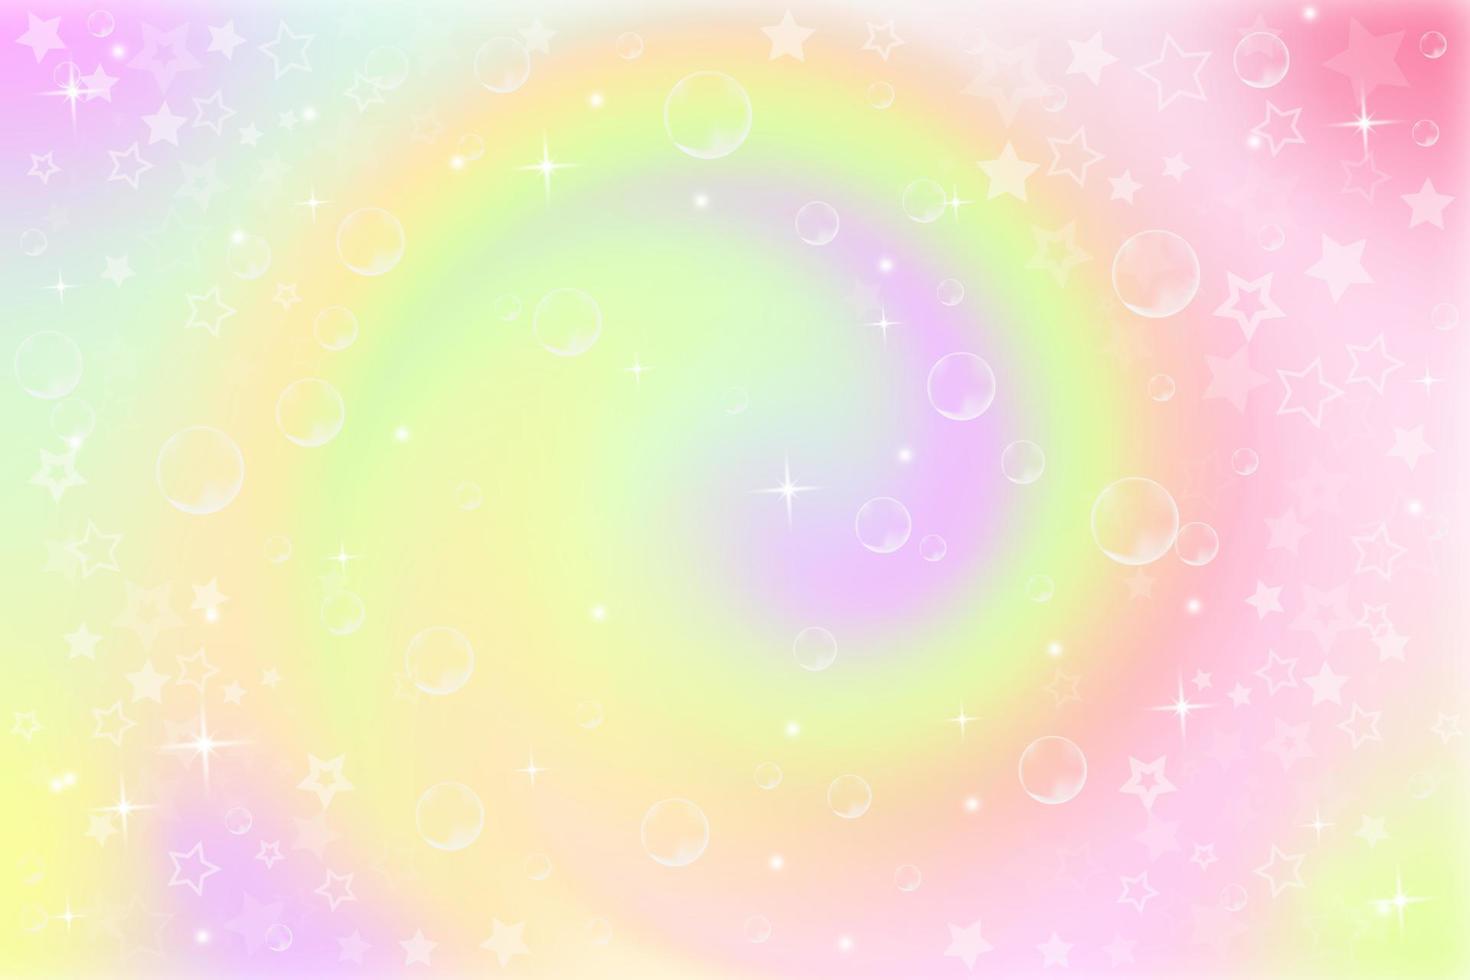 Pastellregenbogenhintergrund mit Strudel. Fantasie-Neon-Einhorn-Muster. heller bunter Himmel mit Sternen. Vektor-Illustration. vektor